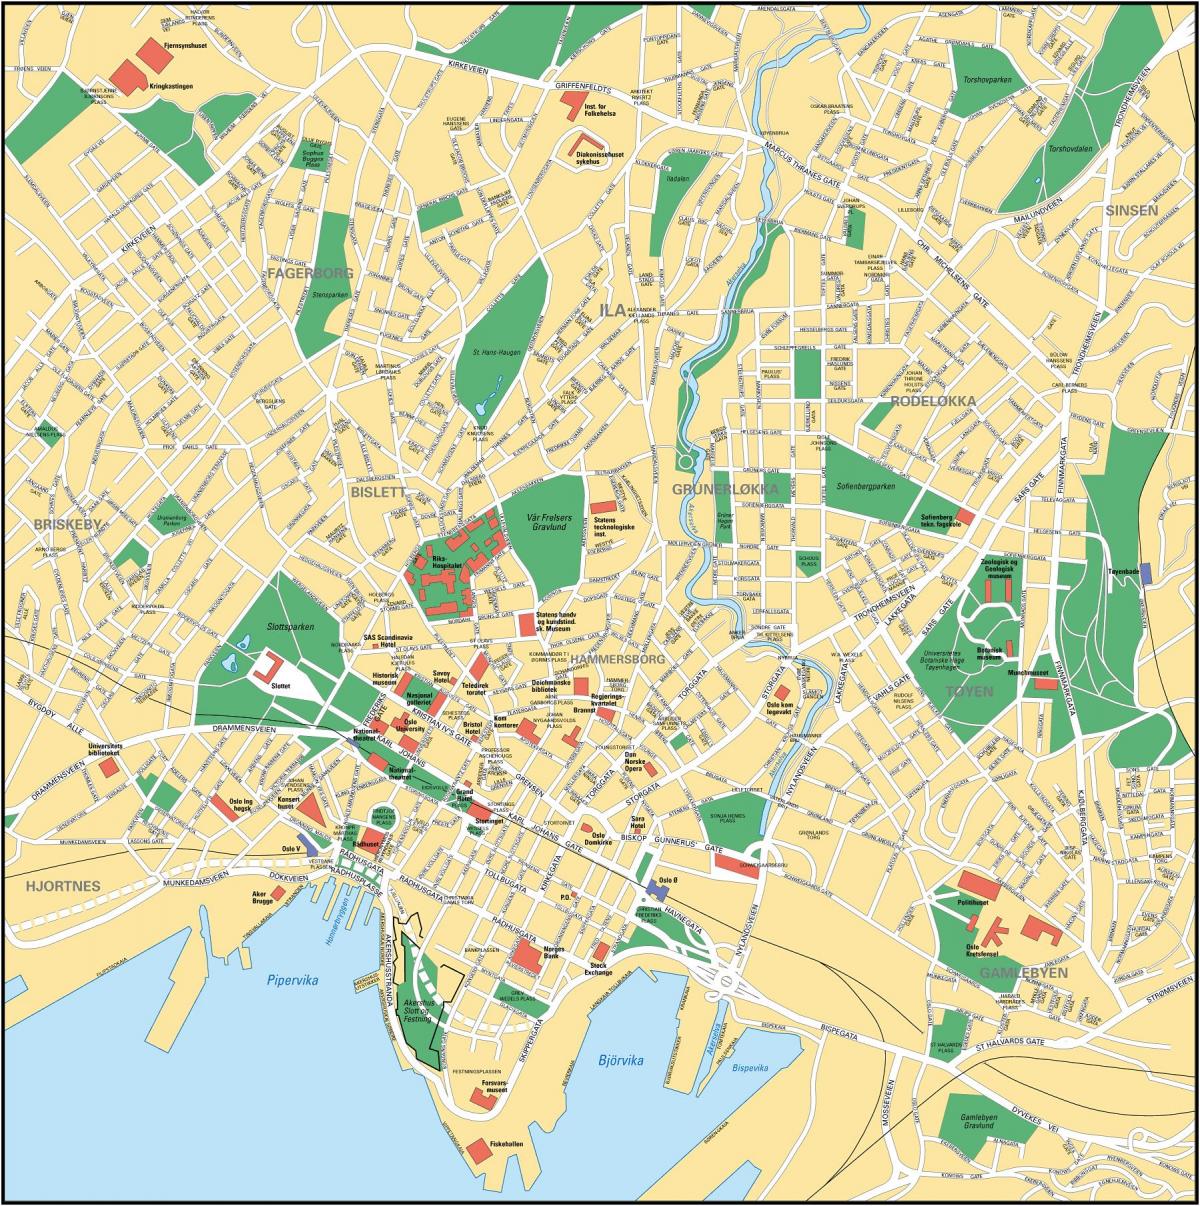 Oslo stadsplattegrond